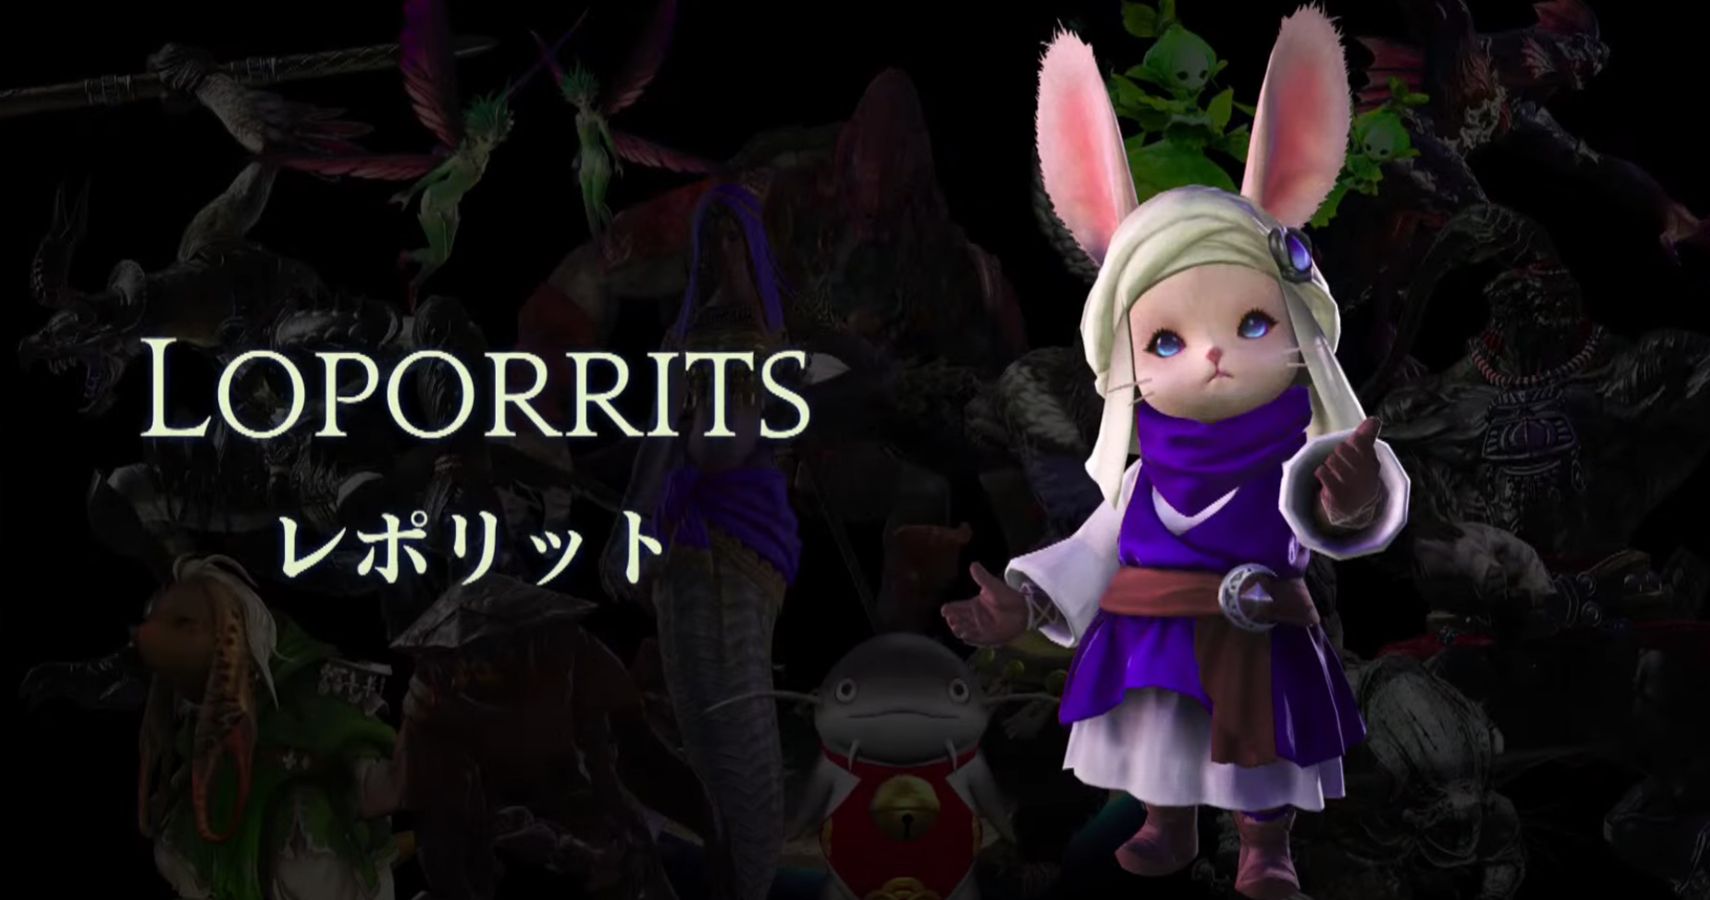 Final Fantasy 14's Endwalker new Beast Tribe, Loporrits